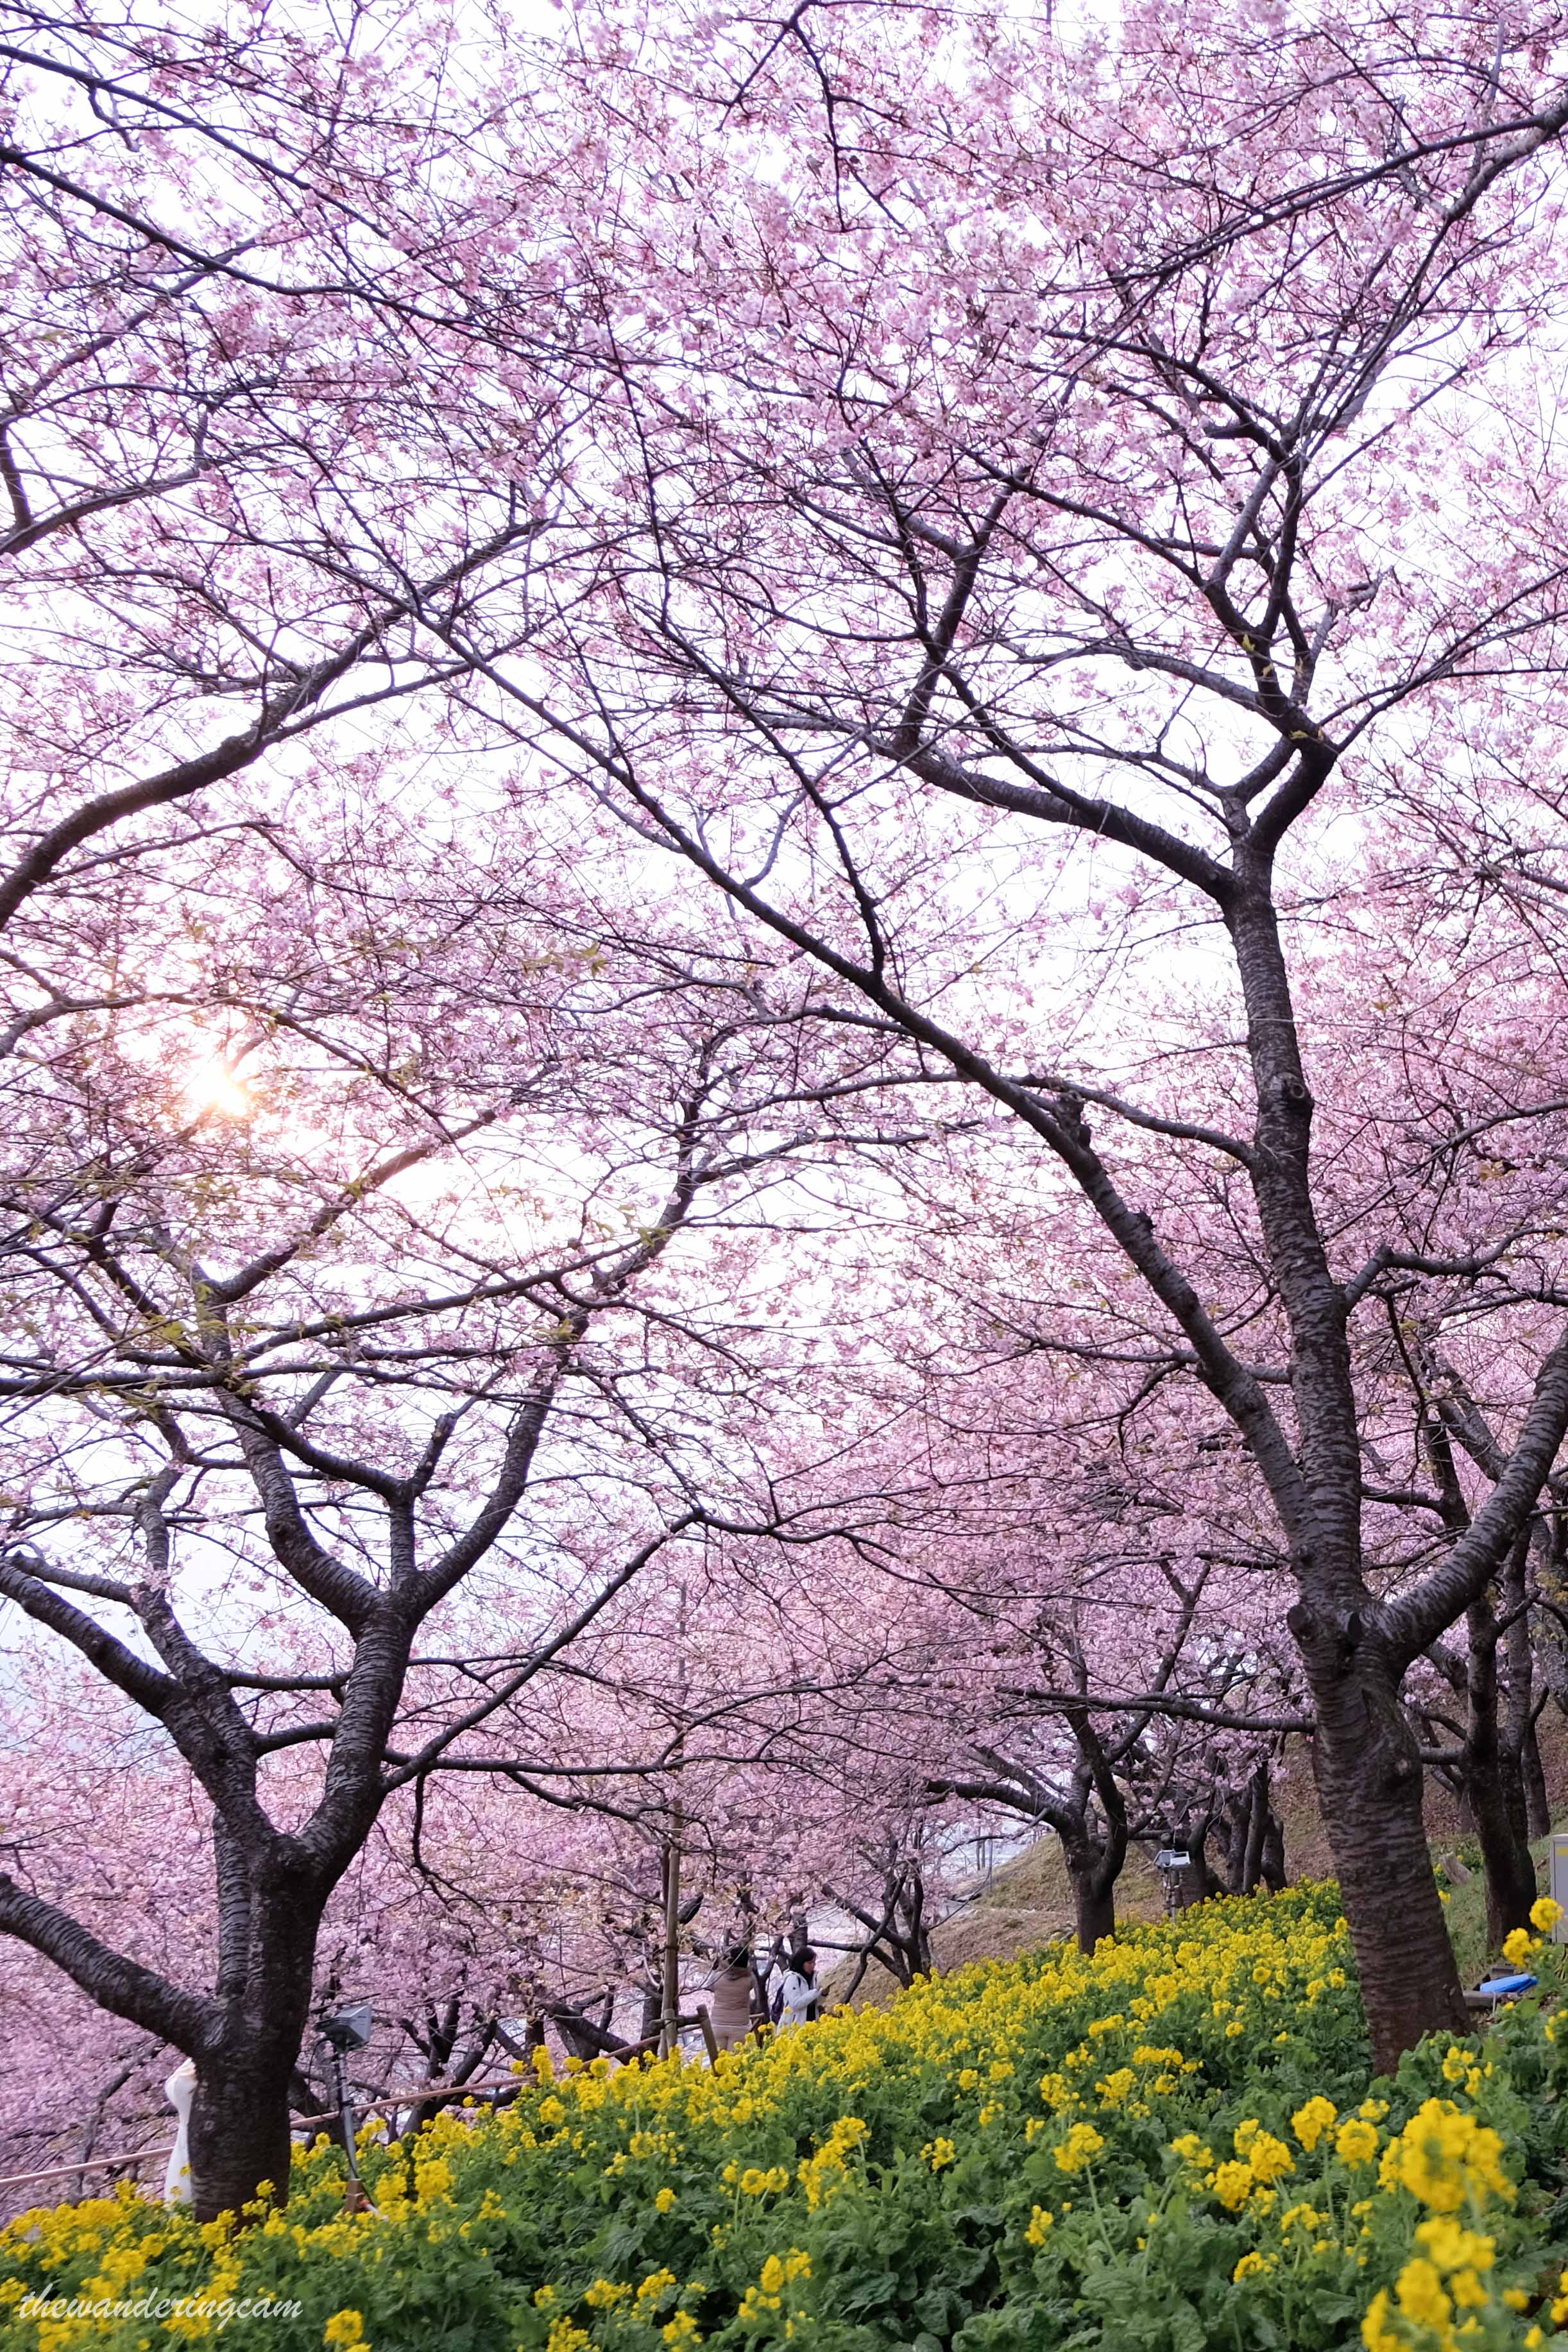 Matsuda cherry blossom festival